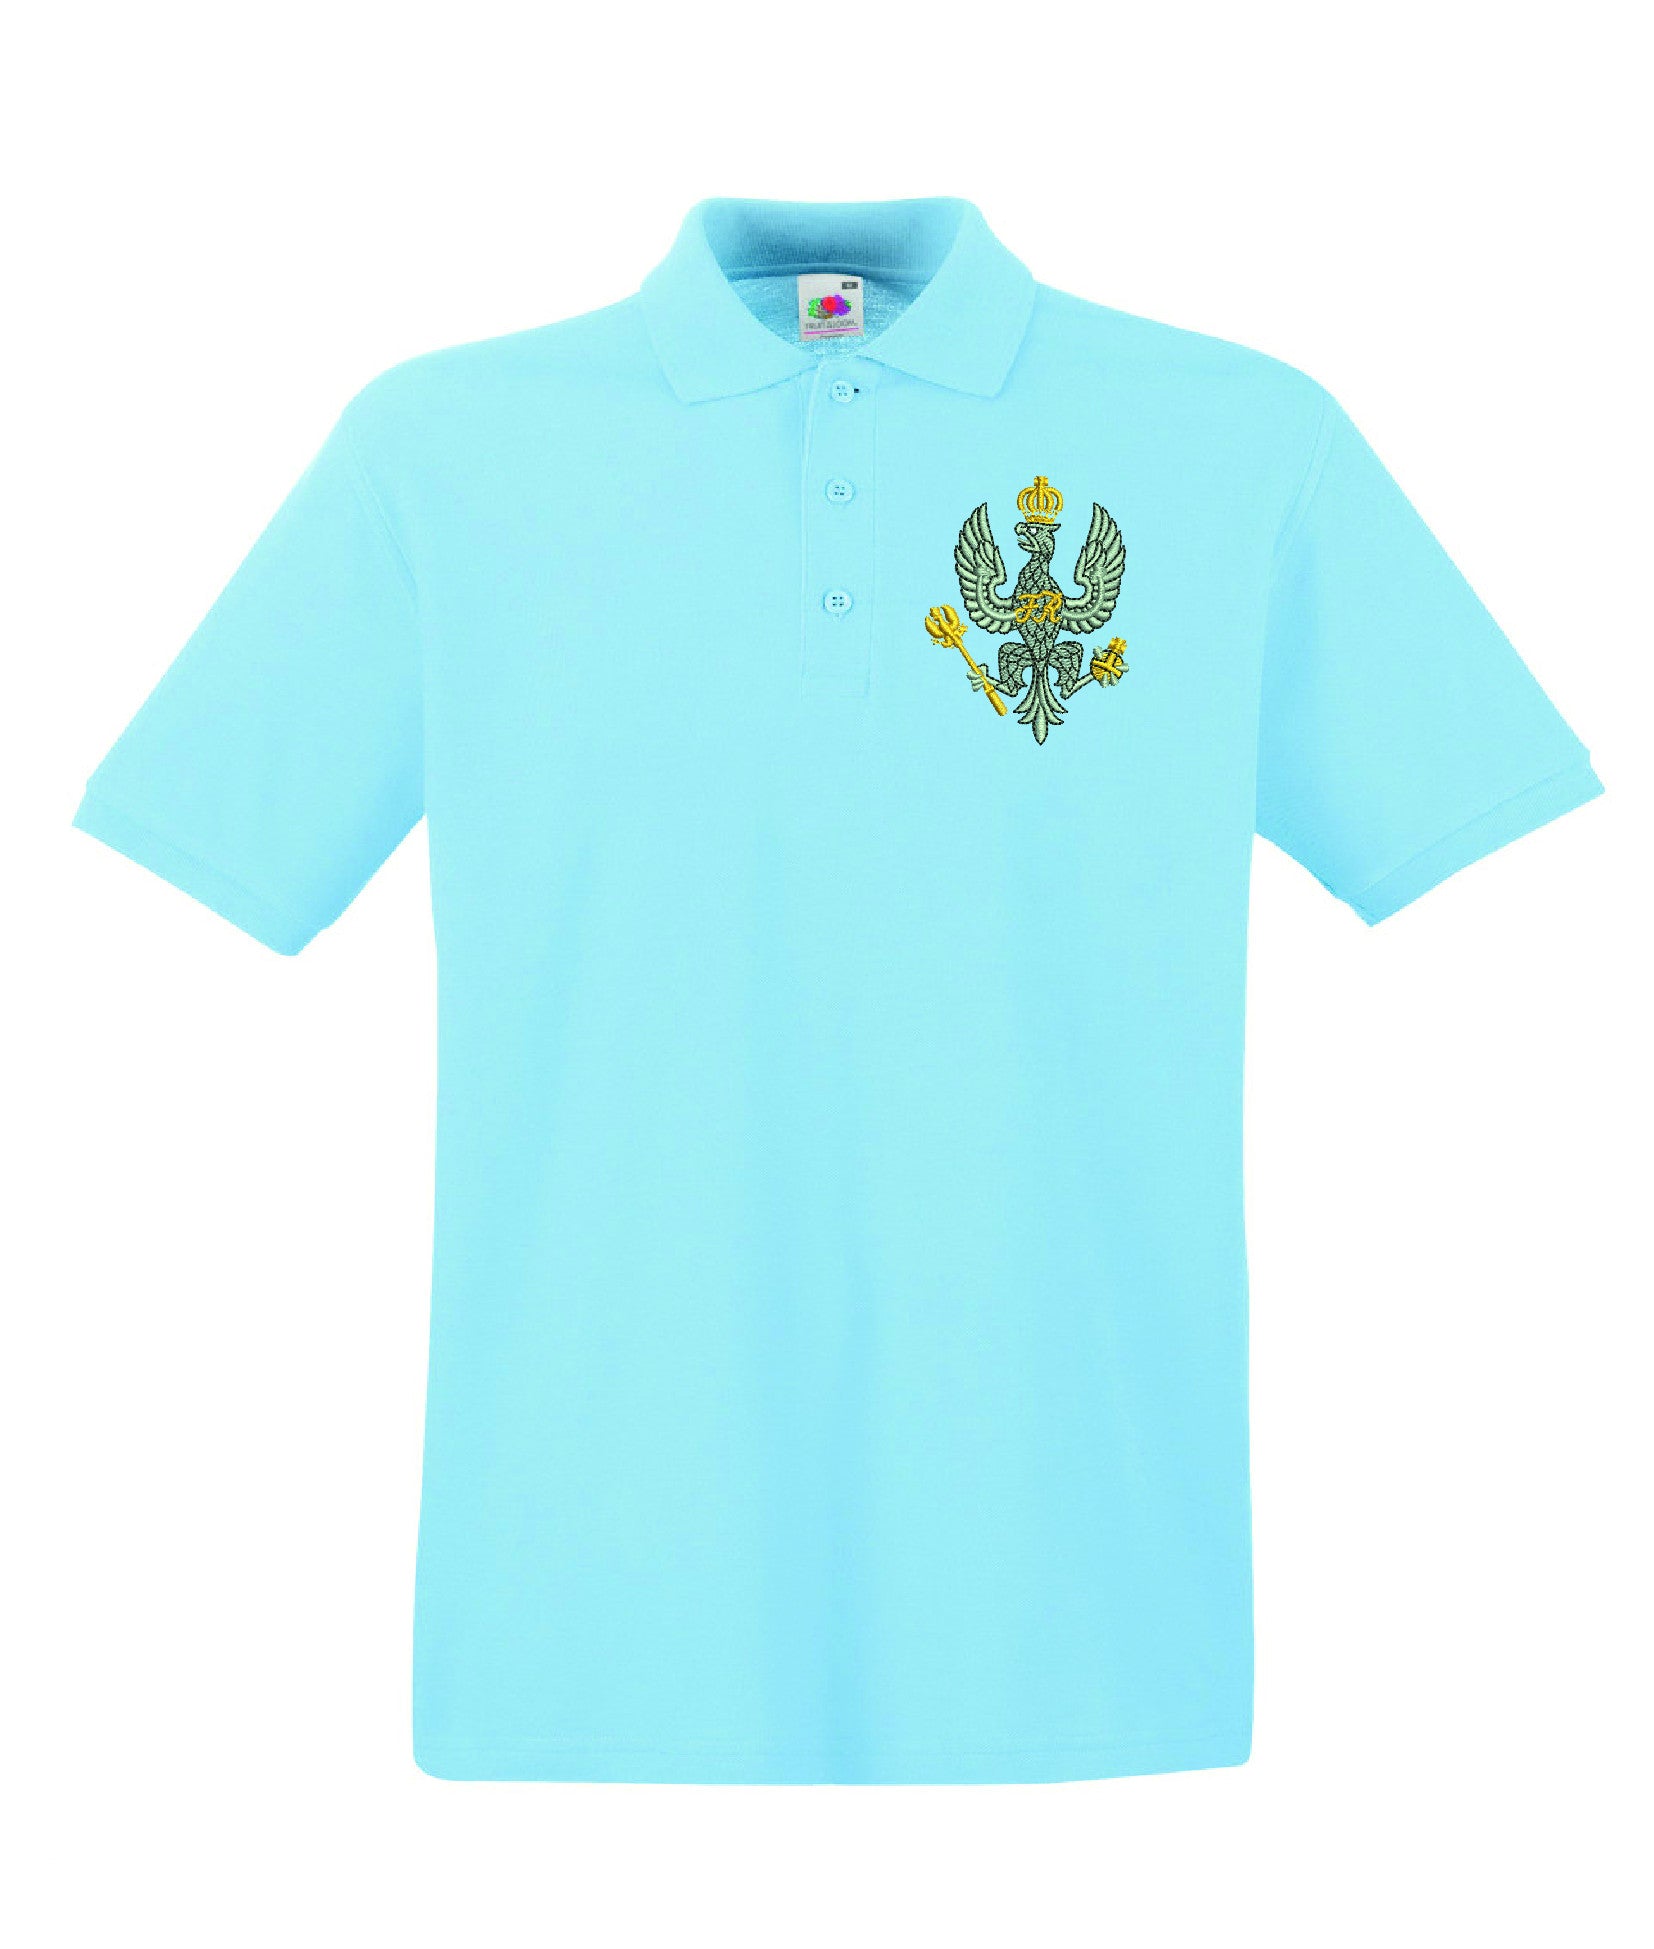 Kings Royal Hussars Polo Shirts